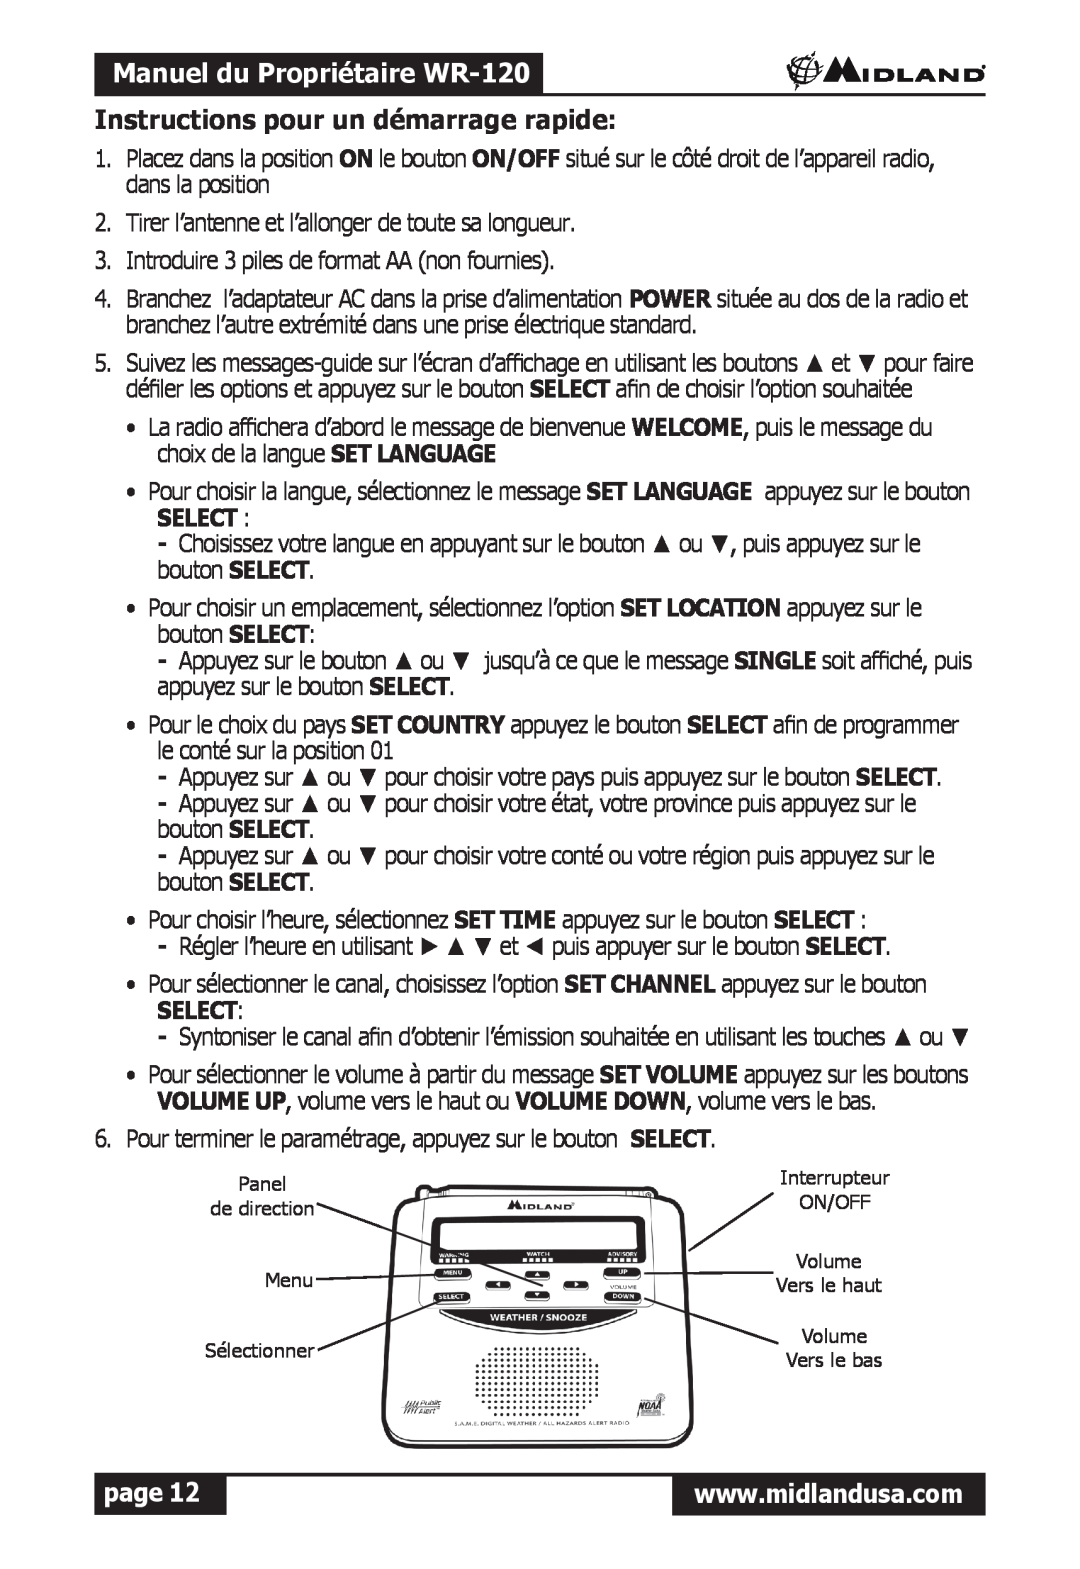 Midland Radio owner manual Manuel du Propriétaire WR-120, Instructions pour un démarrage rapide, Select, page 